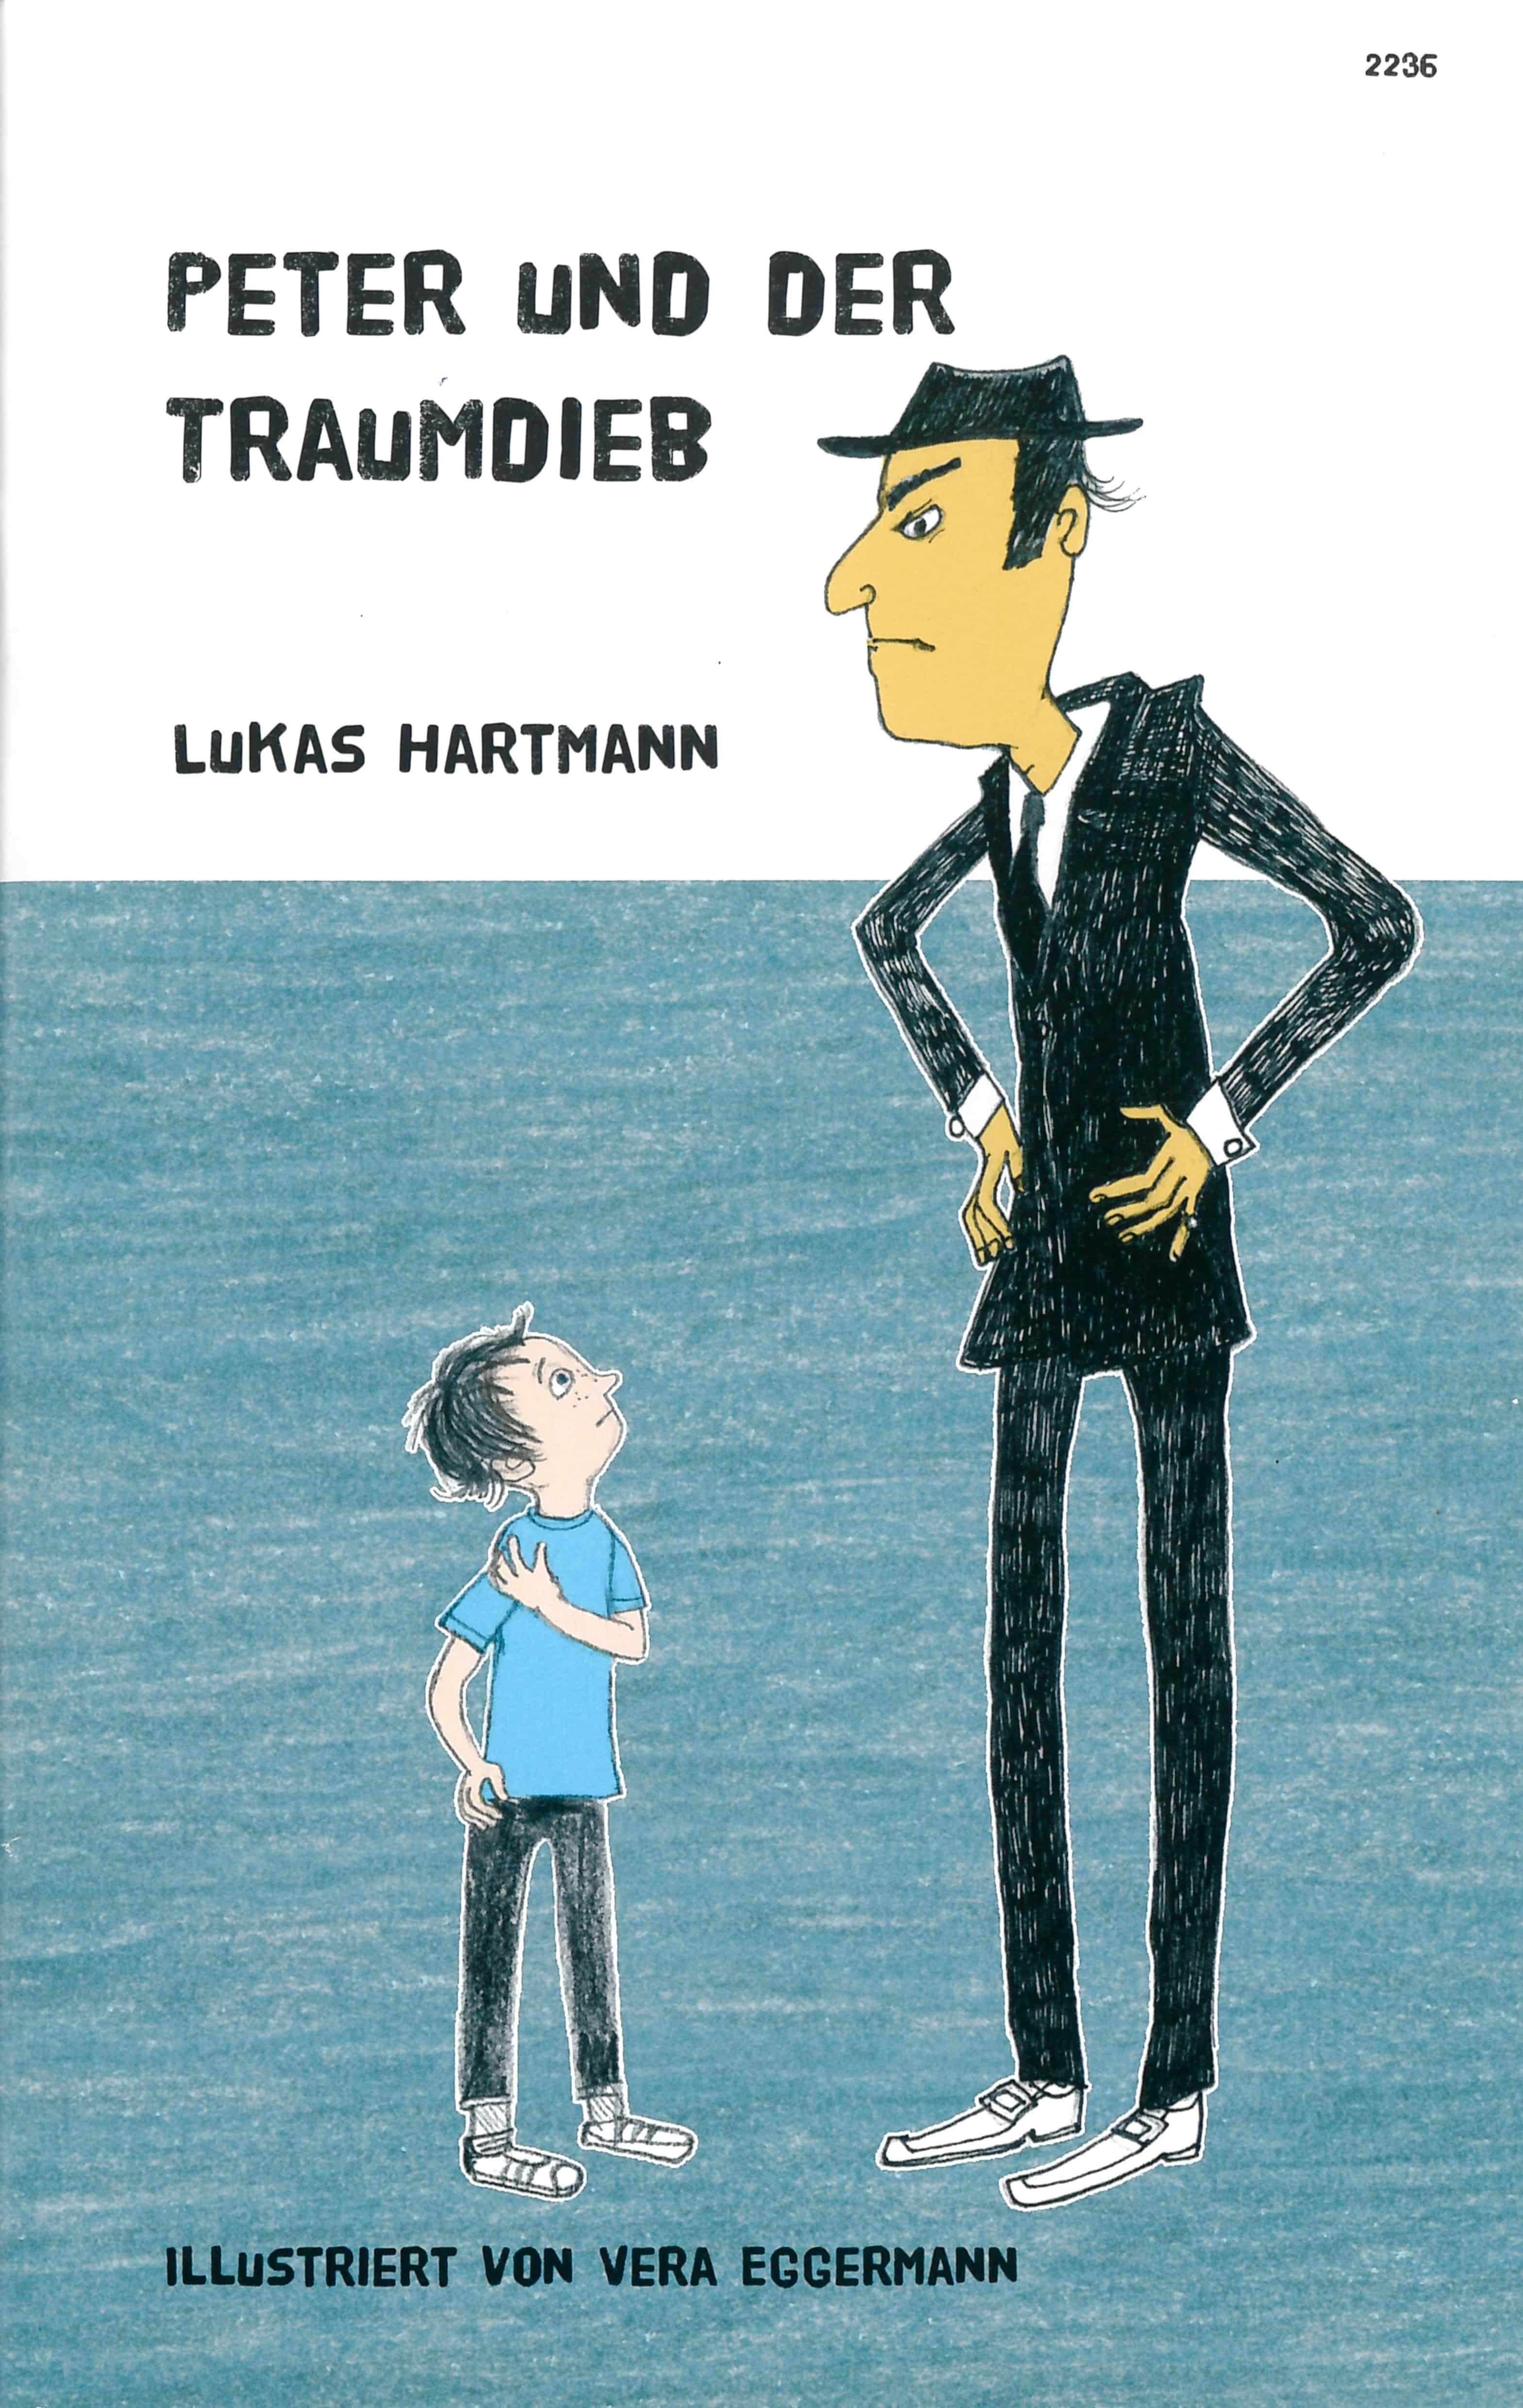 Peter und der Traumdieb, ein Kinderbuch von Lukas Hartmann, Illustration von Vera Eggermann, SJW Verlag, Fantasy